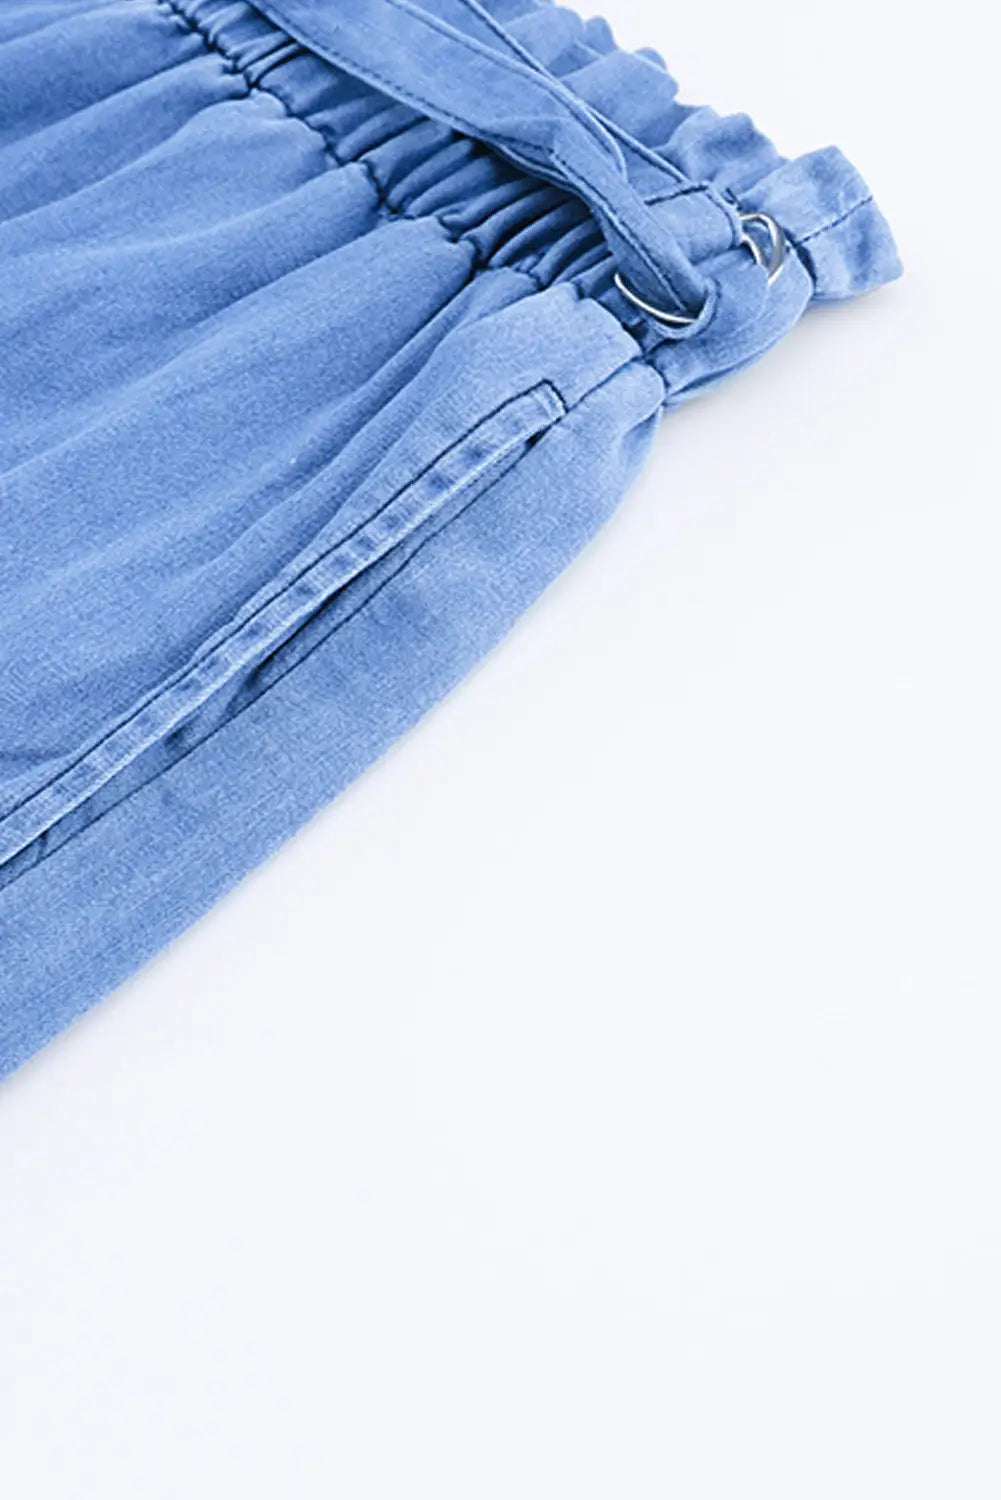 Black high waist pocketed wide leg tencel jeans - bottoms